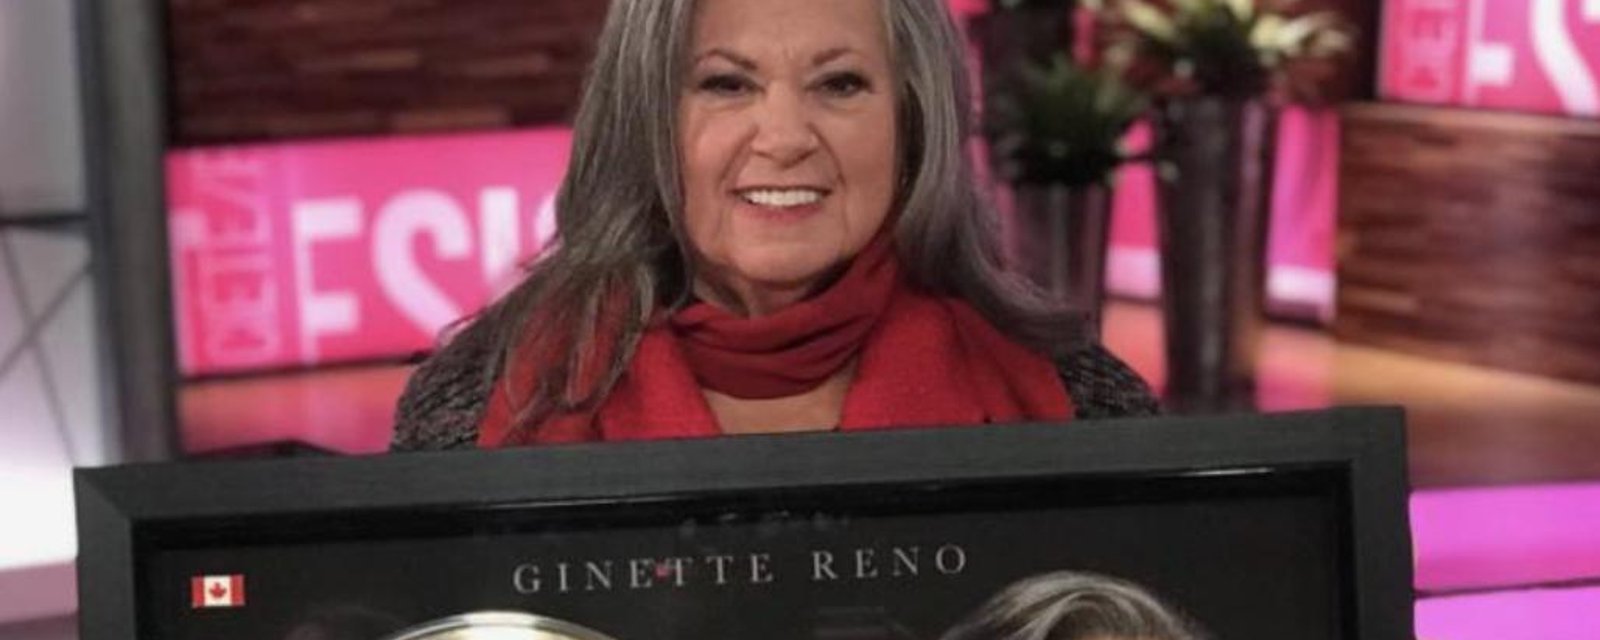 Ginette Reno publie un texte sur la vieillesse qui génère énormément de réactions sur Facebook